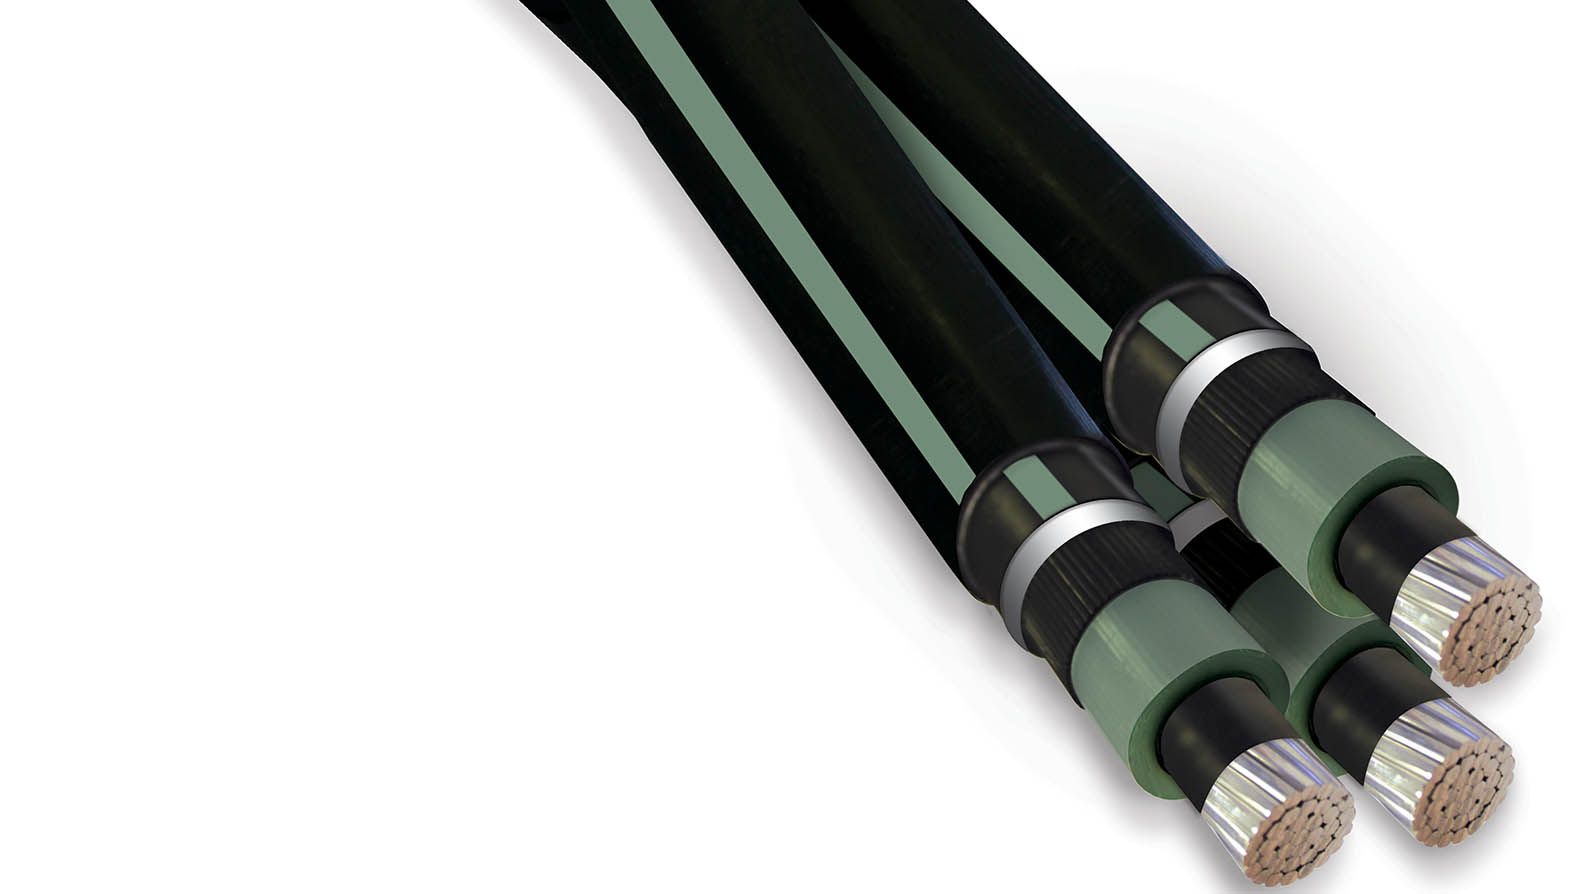 câble EDRMAX by Nexans™ accélère et facilite le raccordement des sources d'énergie renouvelable